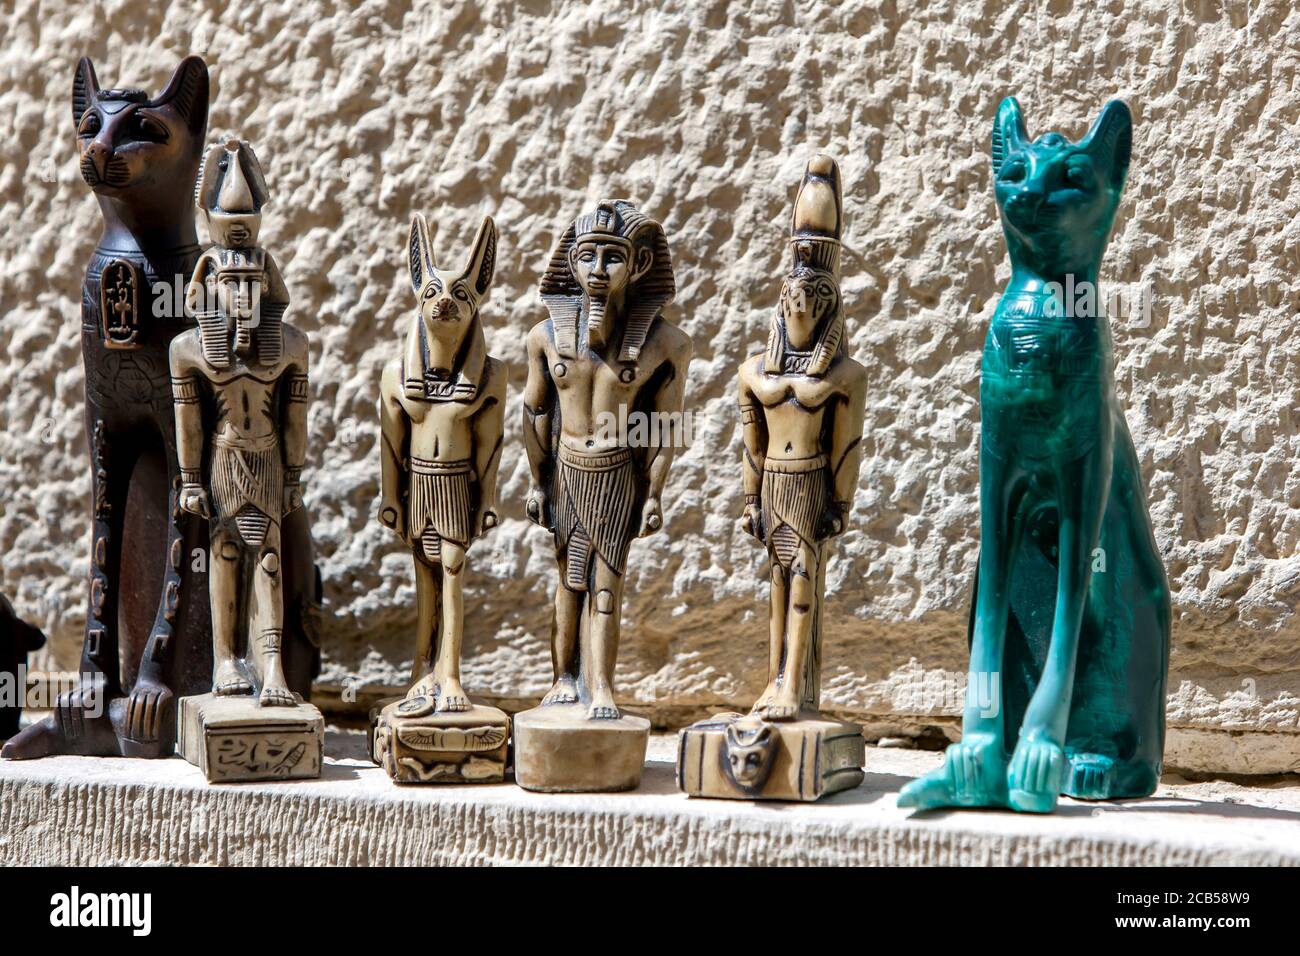 Souvenirs touristiques, y compris des statues miniatures à vendre près du Sphinx sur le plateau de Gizeh au Caire en Égypte. Banque D'Images